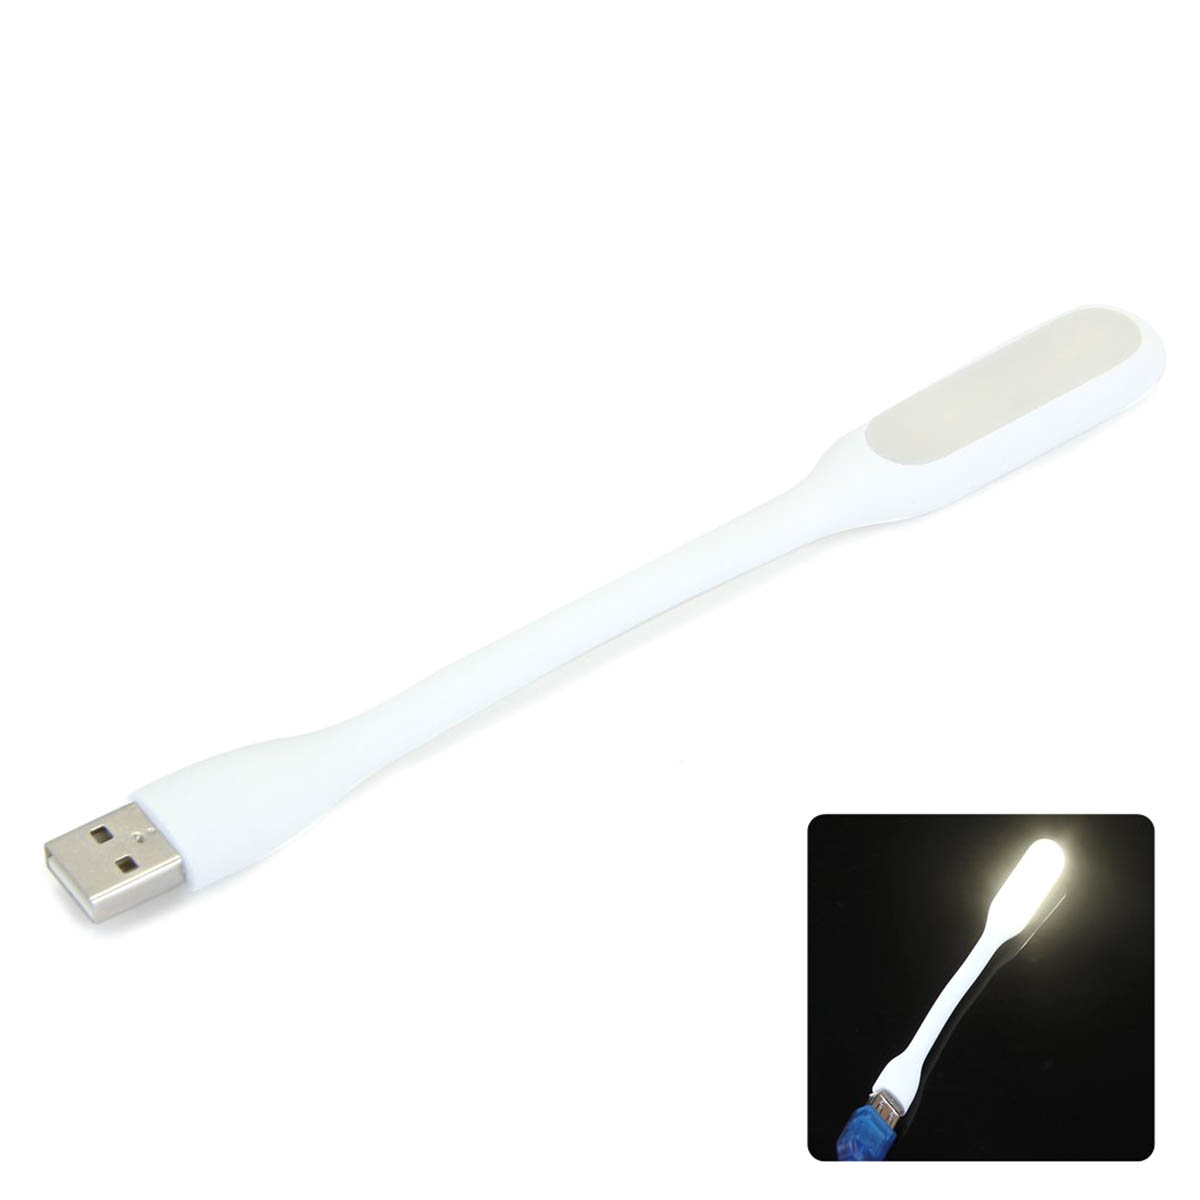 LED USB светильник, 6 диодов, длина 16.5 см, цвет белый